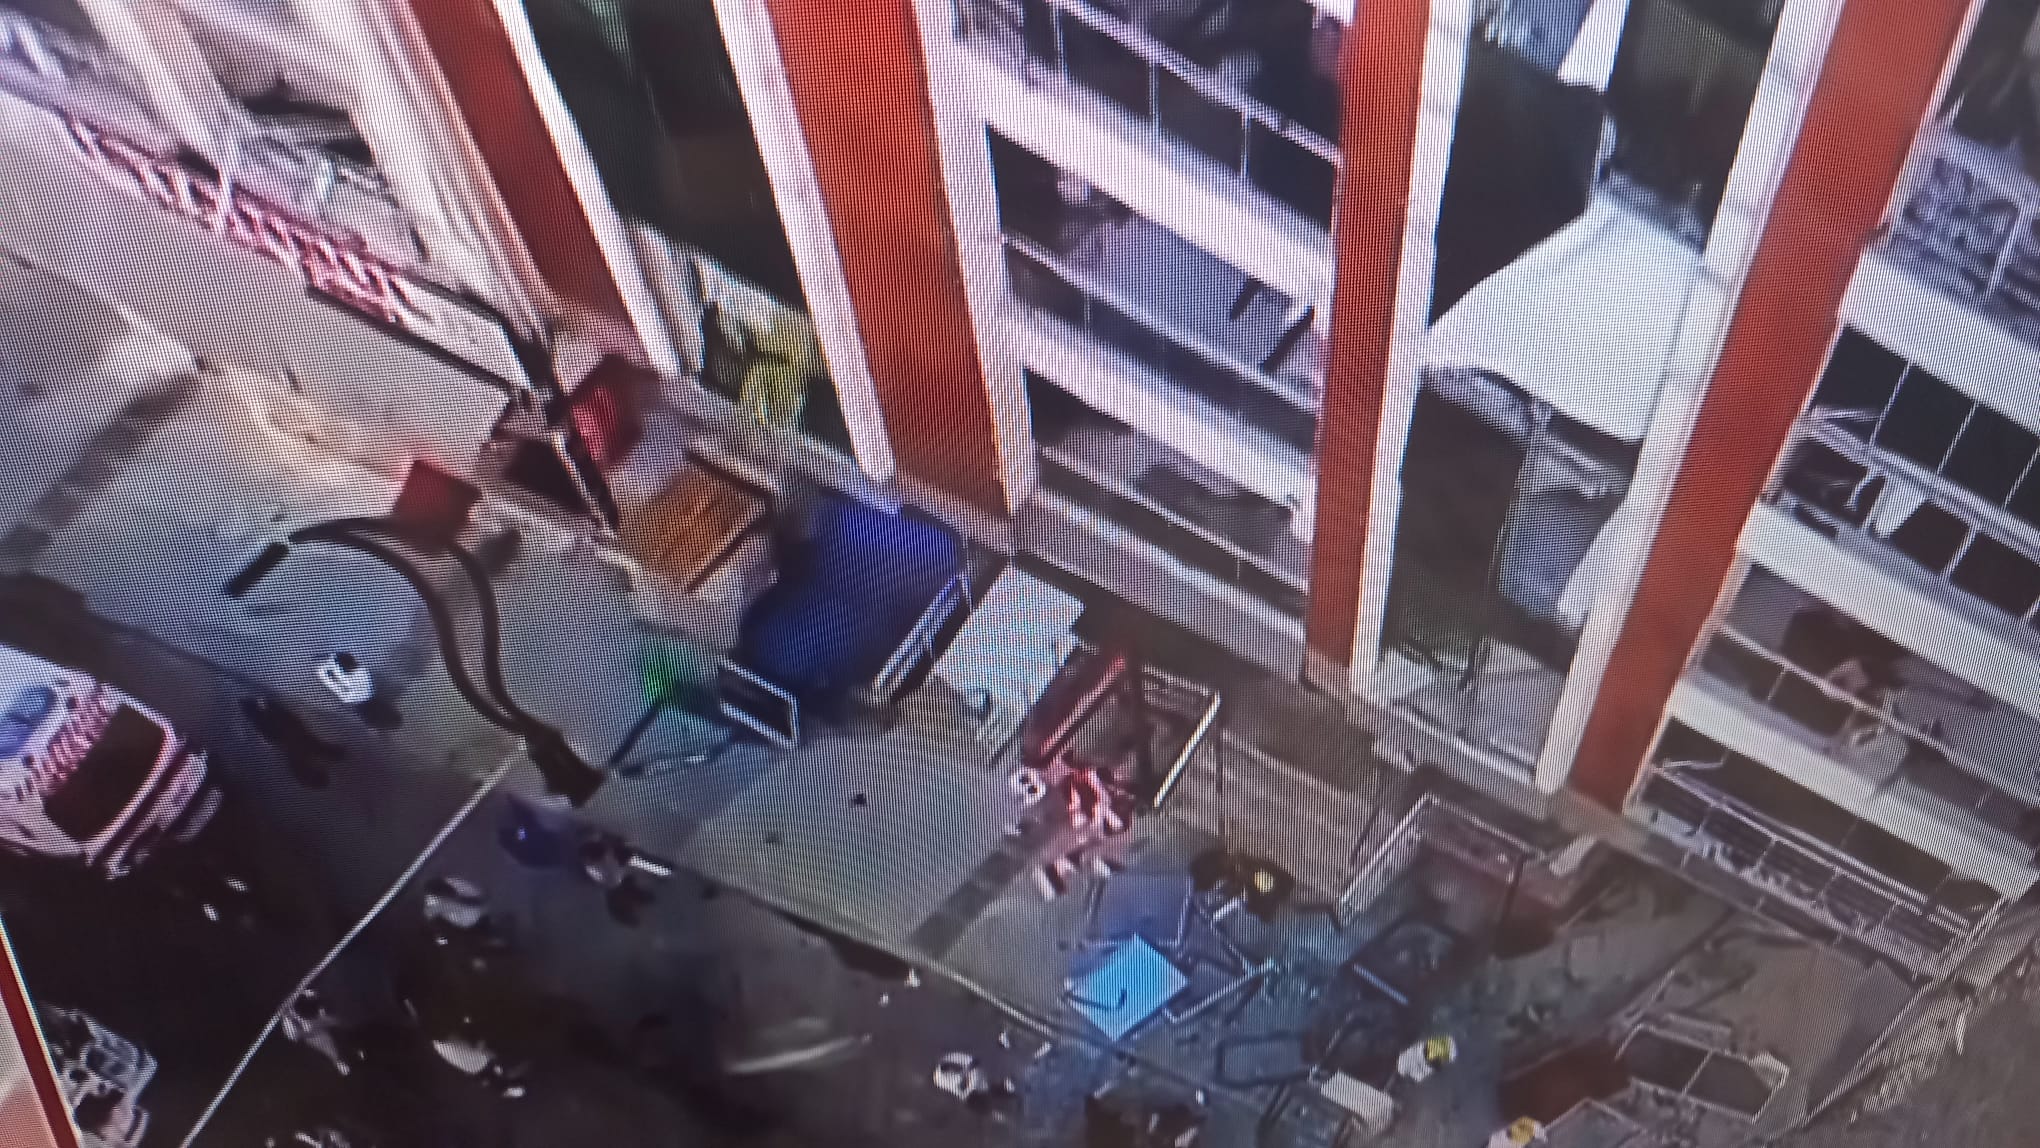 İzmir'in Torbalı ilçesindeki bir evde tüp  patlaması meydana geldi, ilk belirlemelere göre dört kişi hayatını kaybetti.